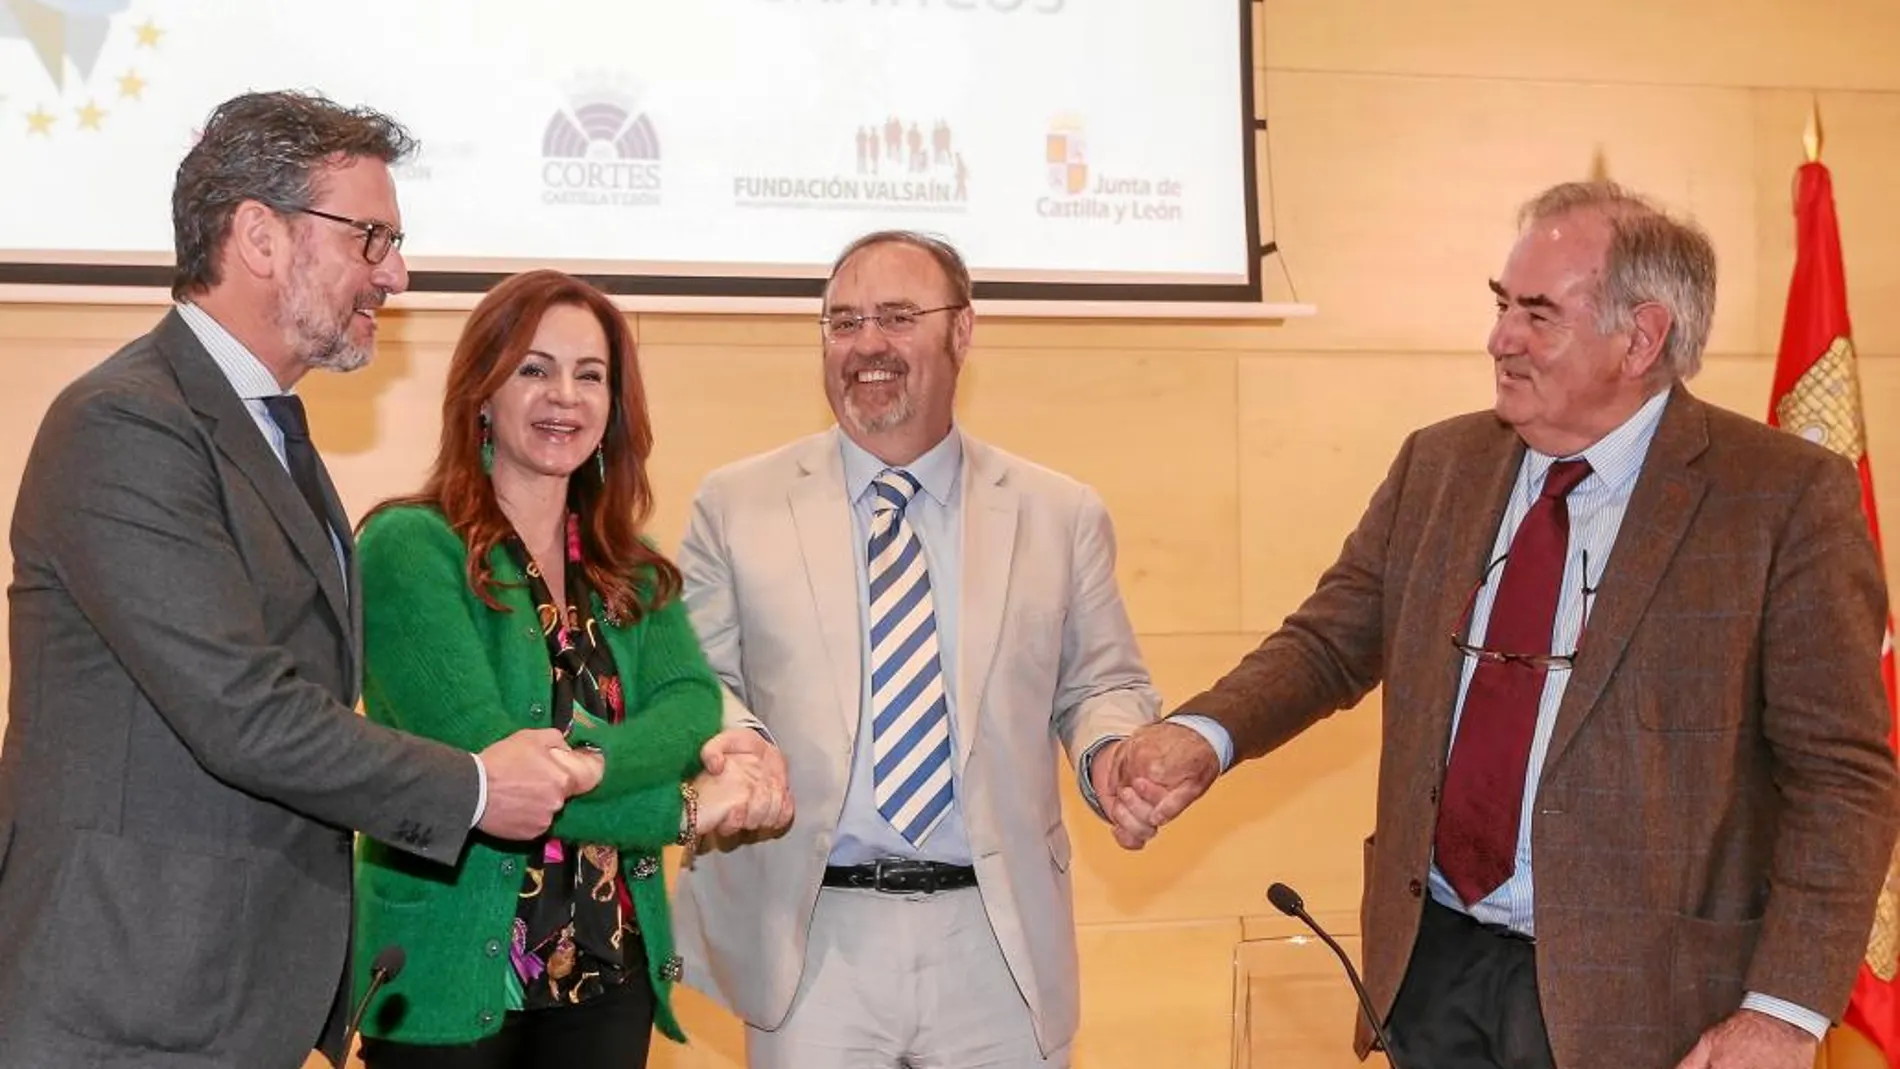 José Luis Vázquez, Silvia Clemente, Fernando Rey y Álvaro Gil Robles estrechan sus manos tras suscribir el acuerdo